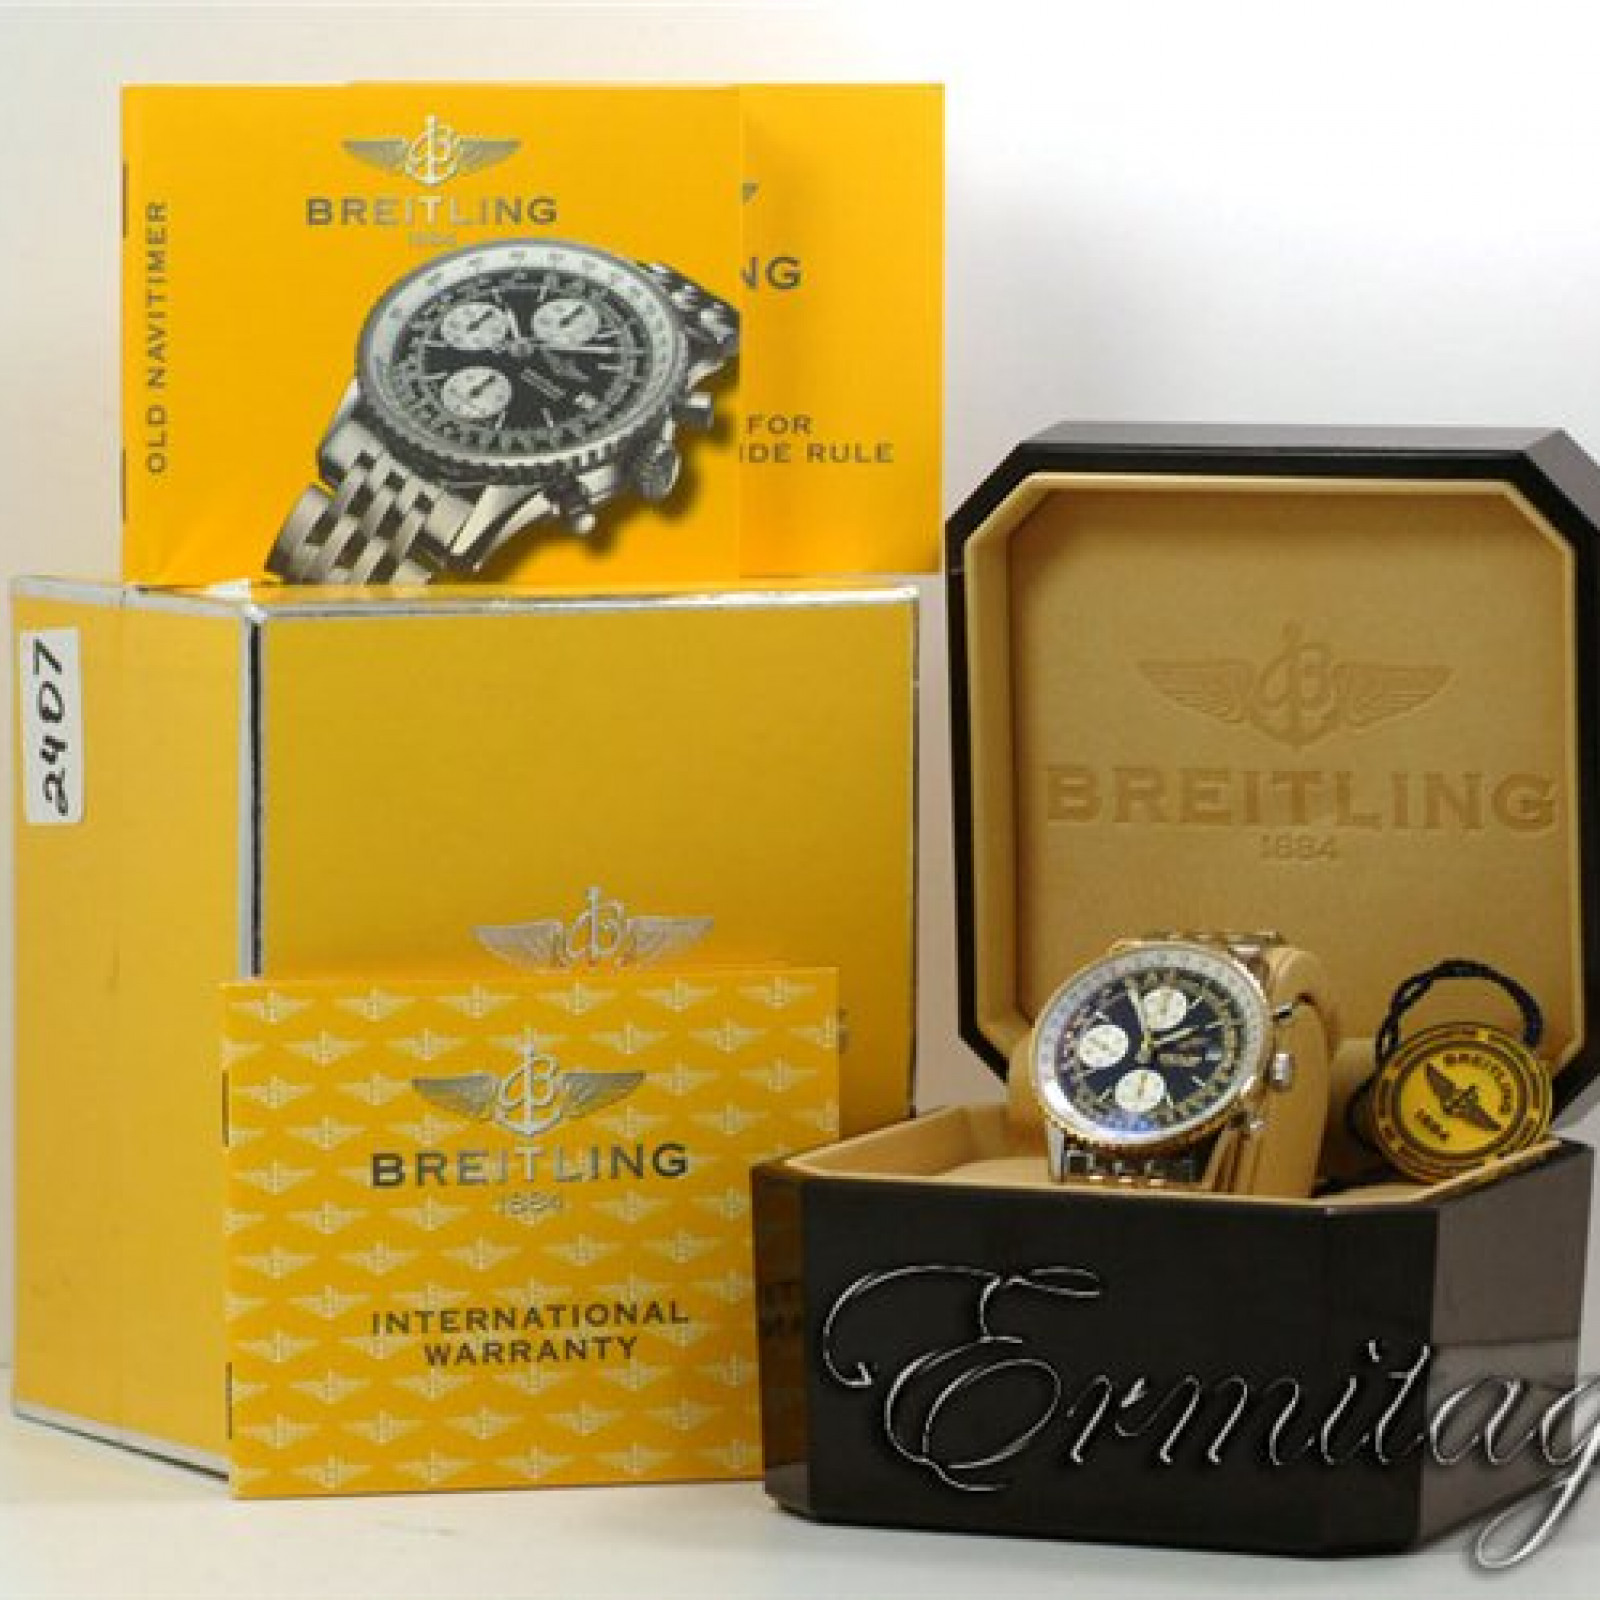 Breitling Old Navitimer II D13322 Gold & Steel